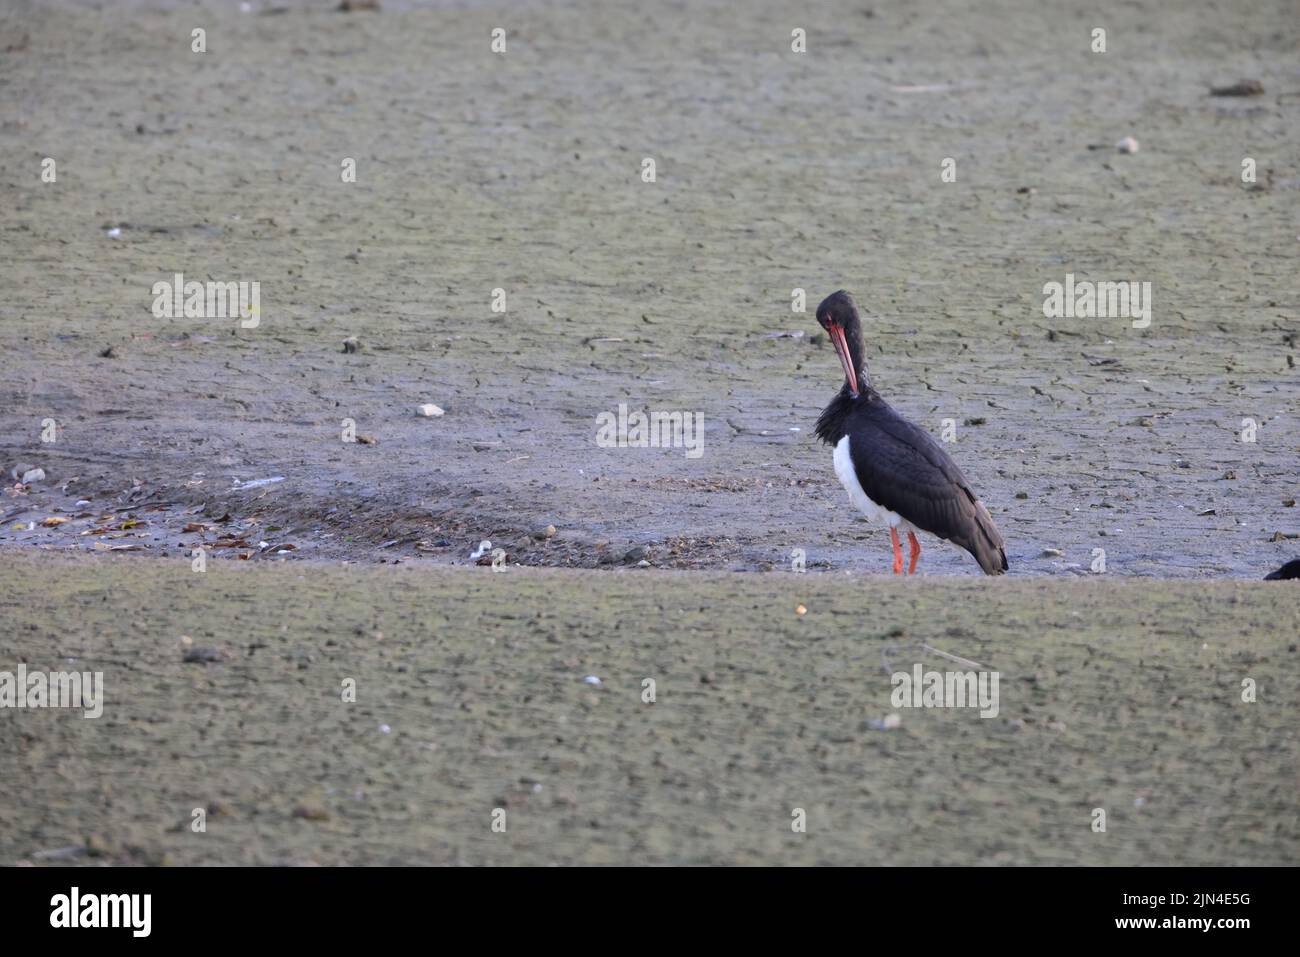 Black stork (Ciconia nigra) in Japan Stock Photo